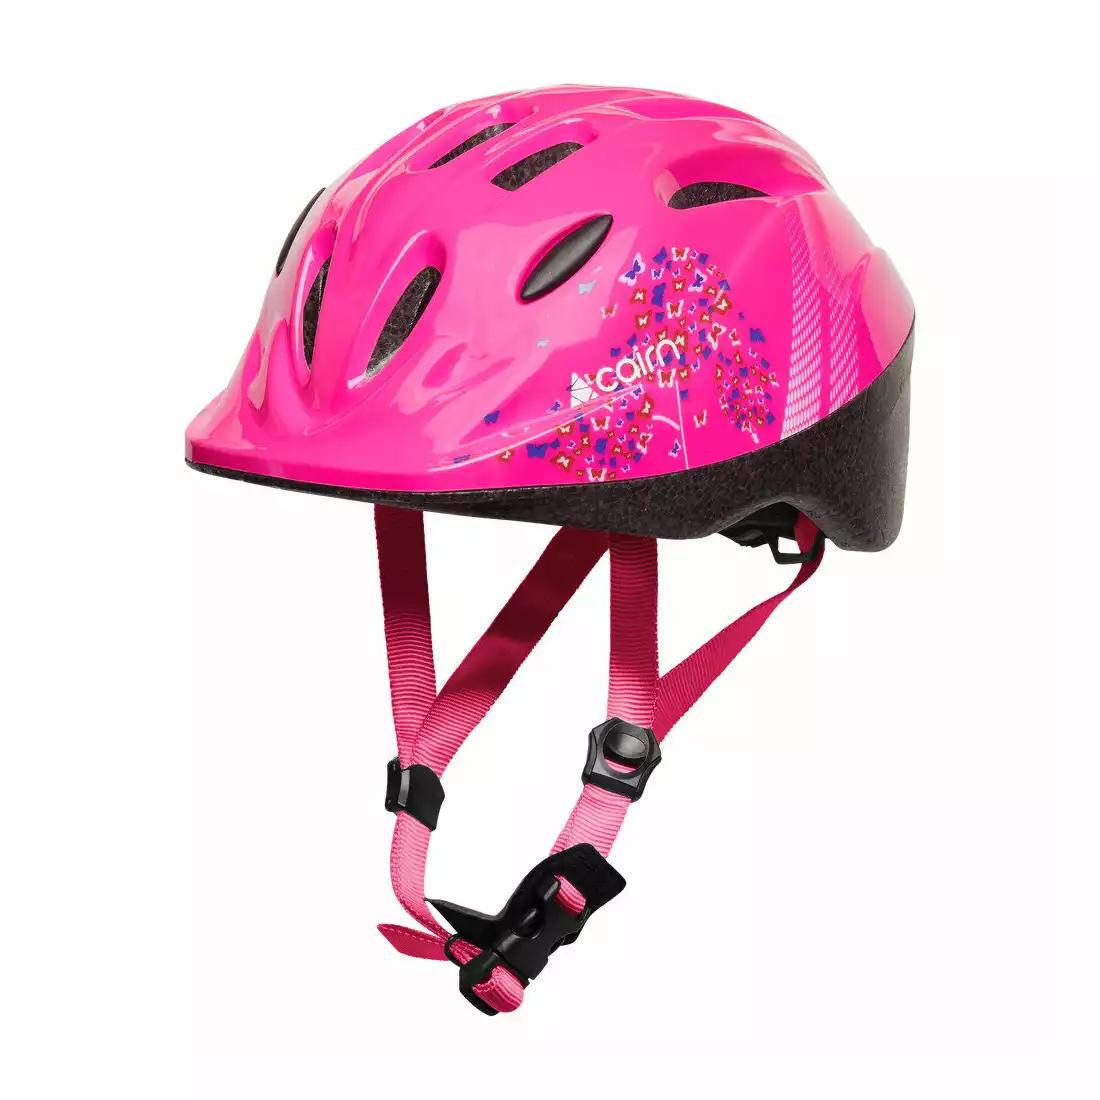 CAIRN SUNNY Children's bicycle helmet, pink